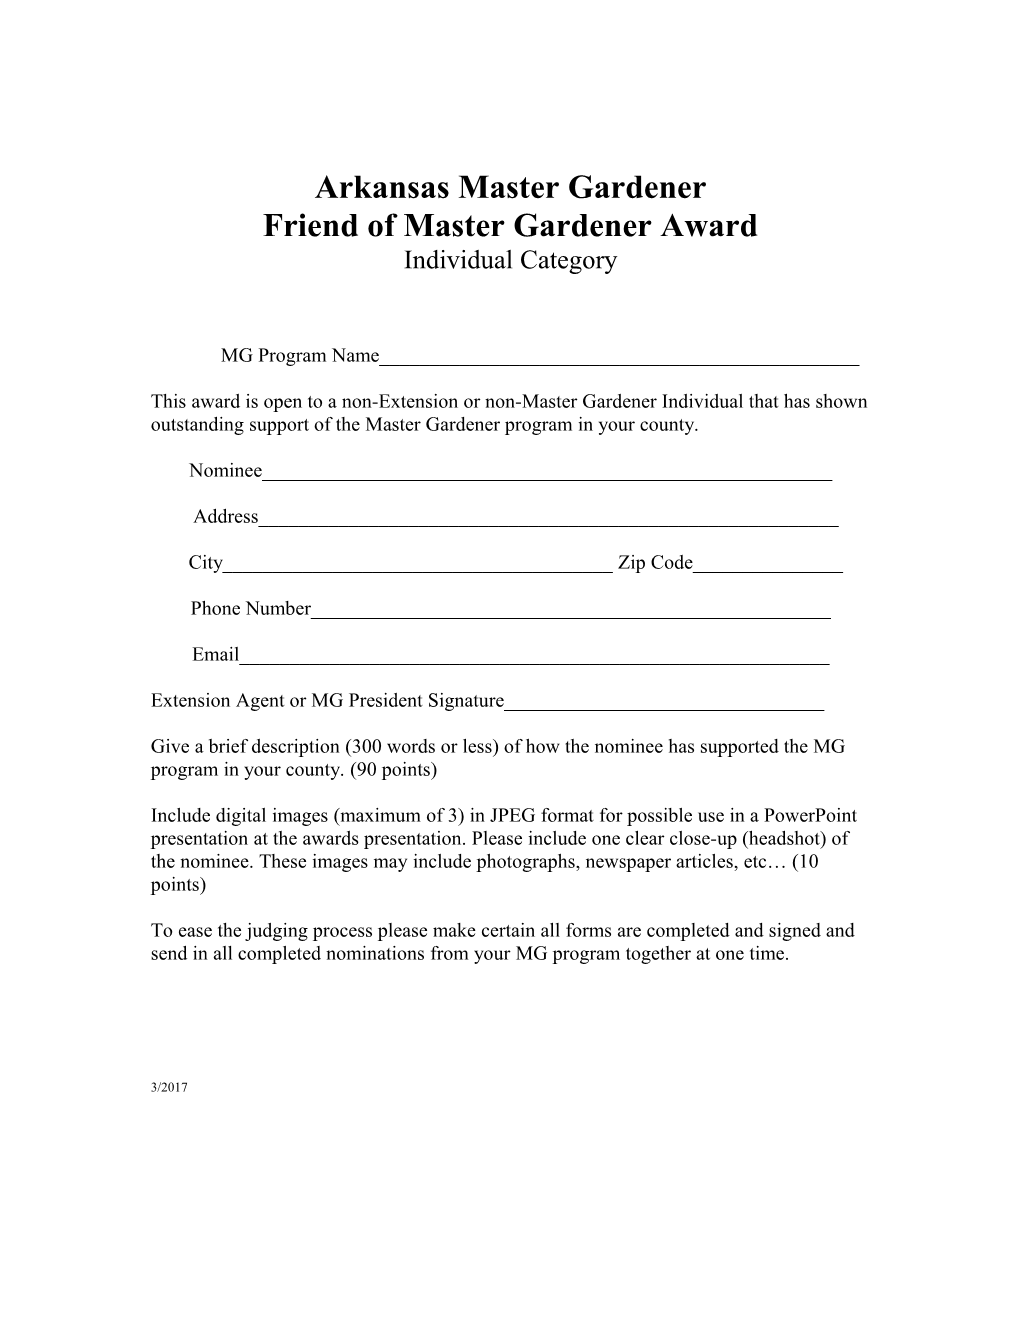 Arkansas Master Gardener s1